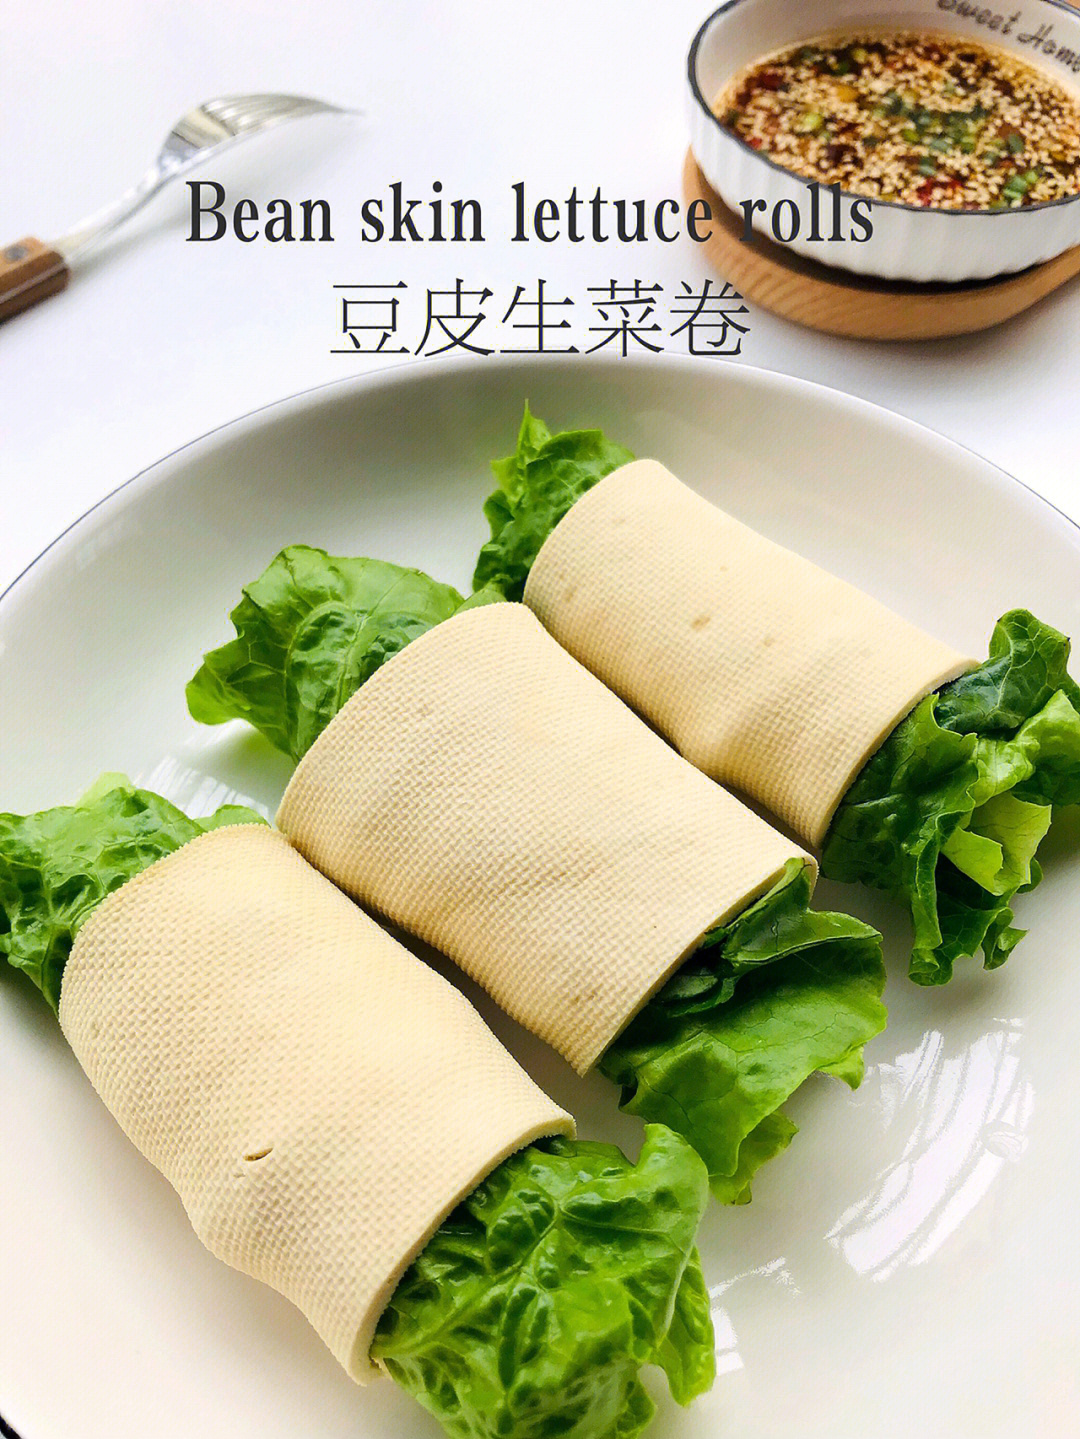 生菜豆腐皮图片